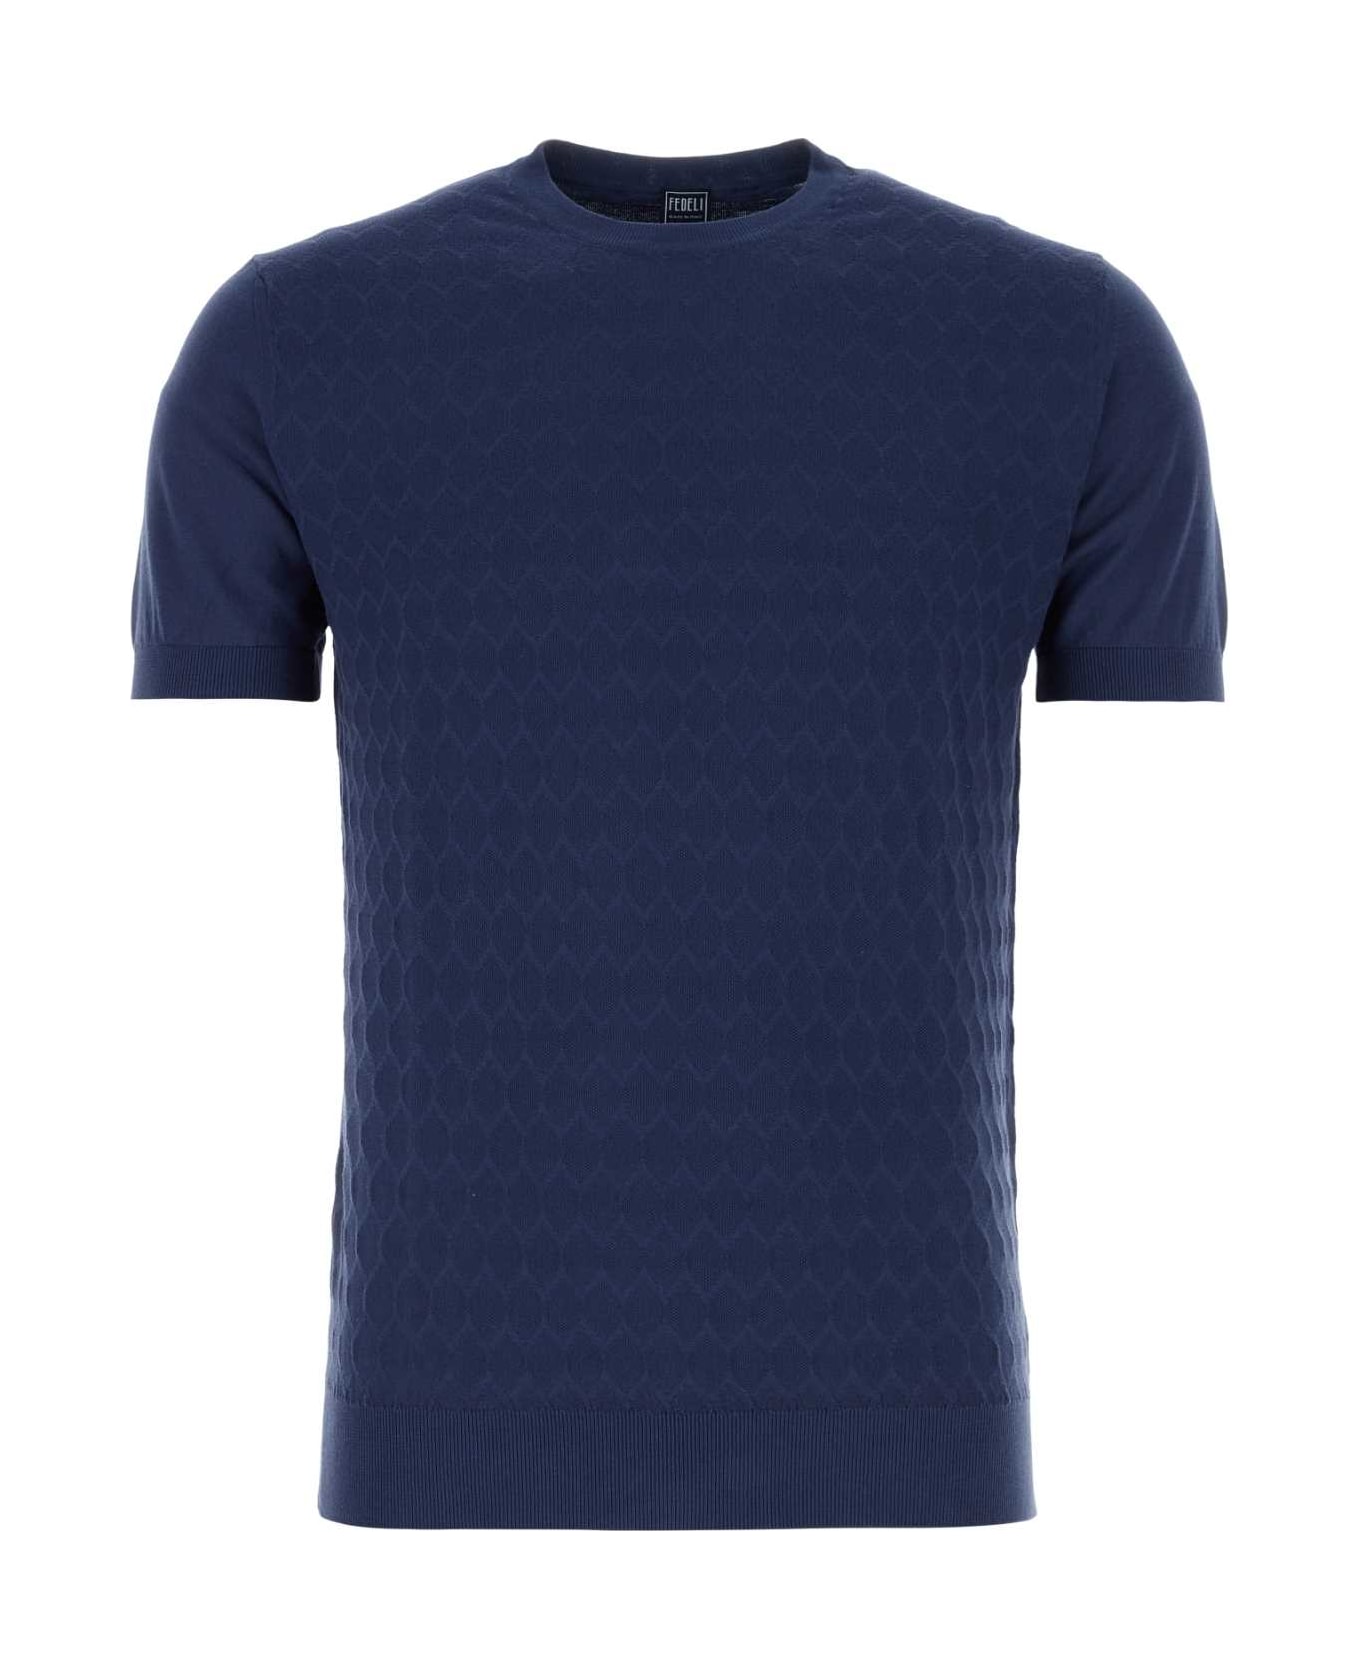 Fedeli Blue Cotton Sweater - BLUAPERTO シャツ